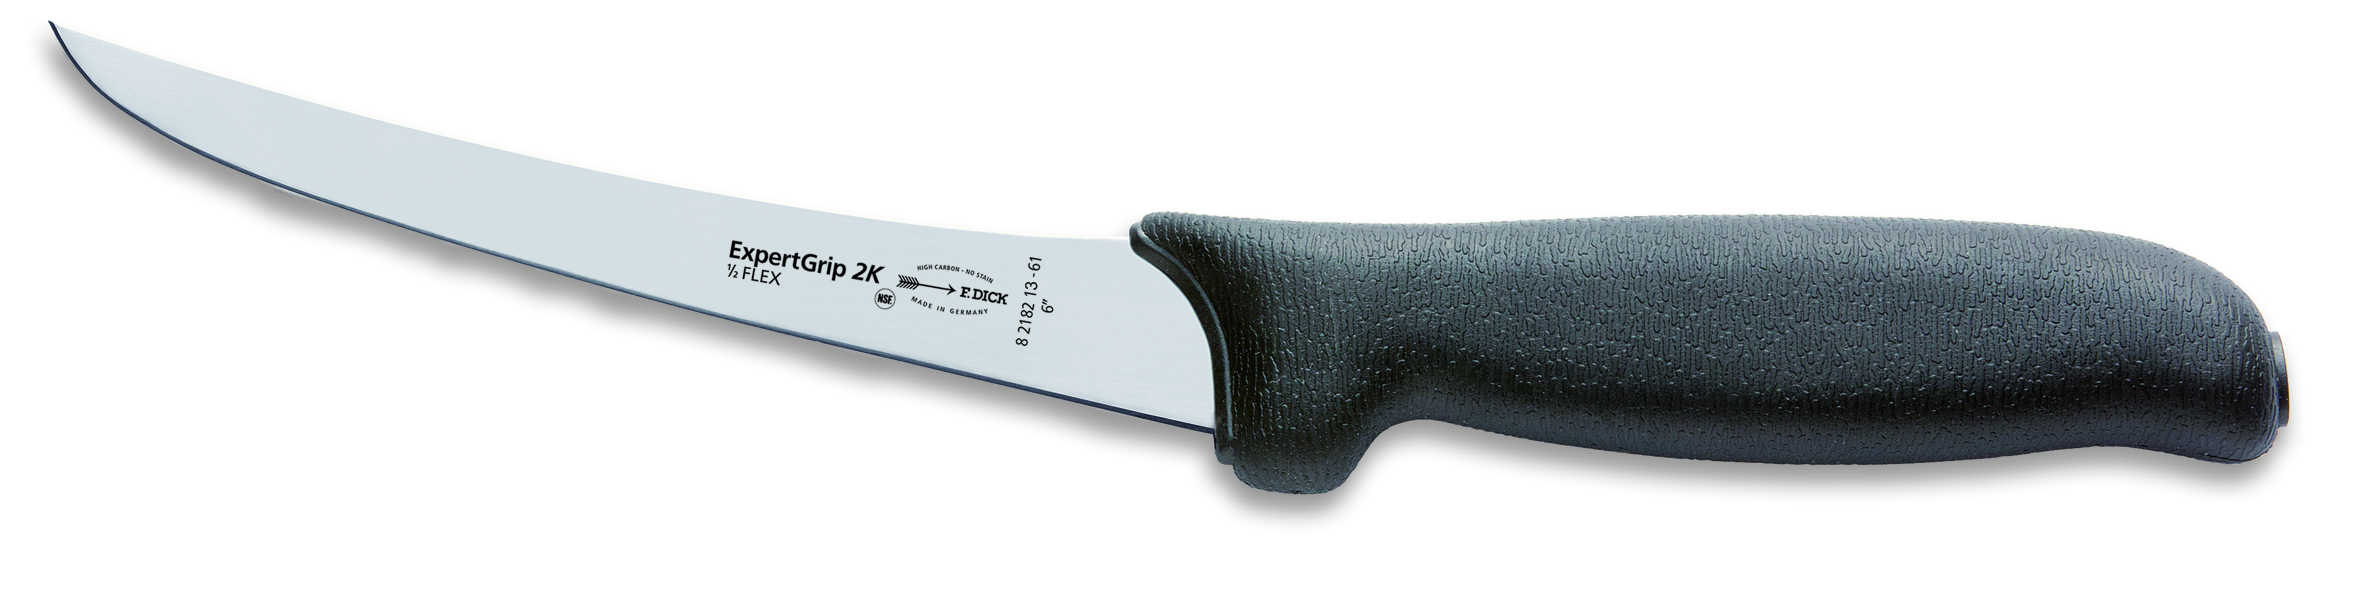 Vykosťovací nůž Dick poloflexibilní v délce 13 cm ze série ExpertGrip, černý